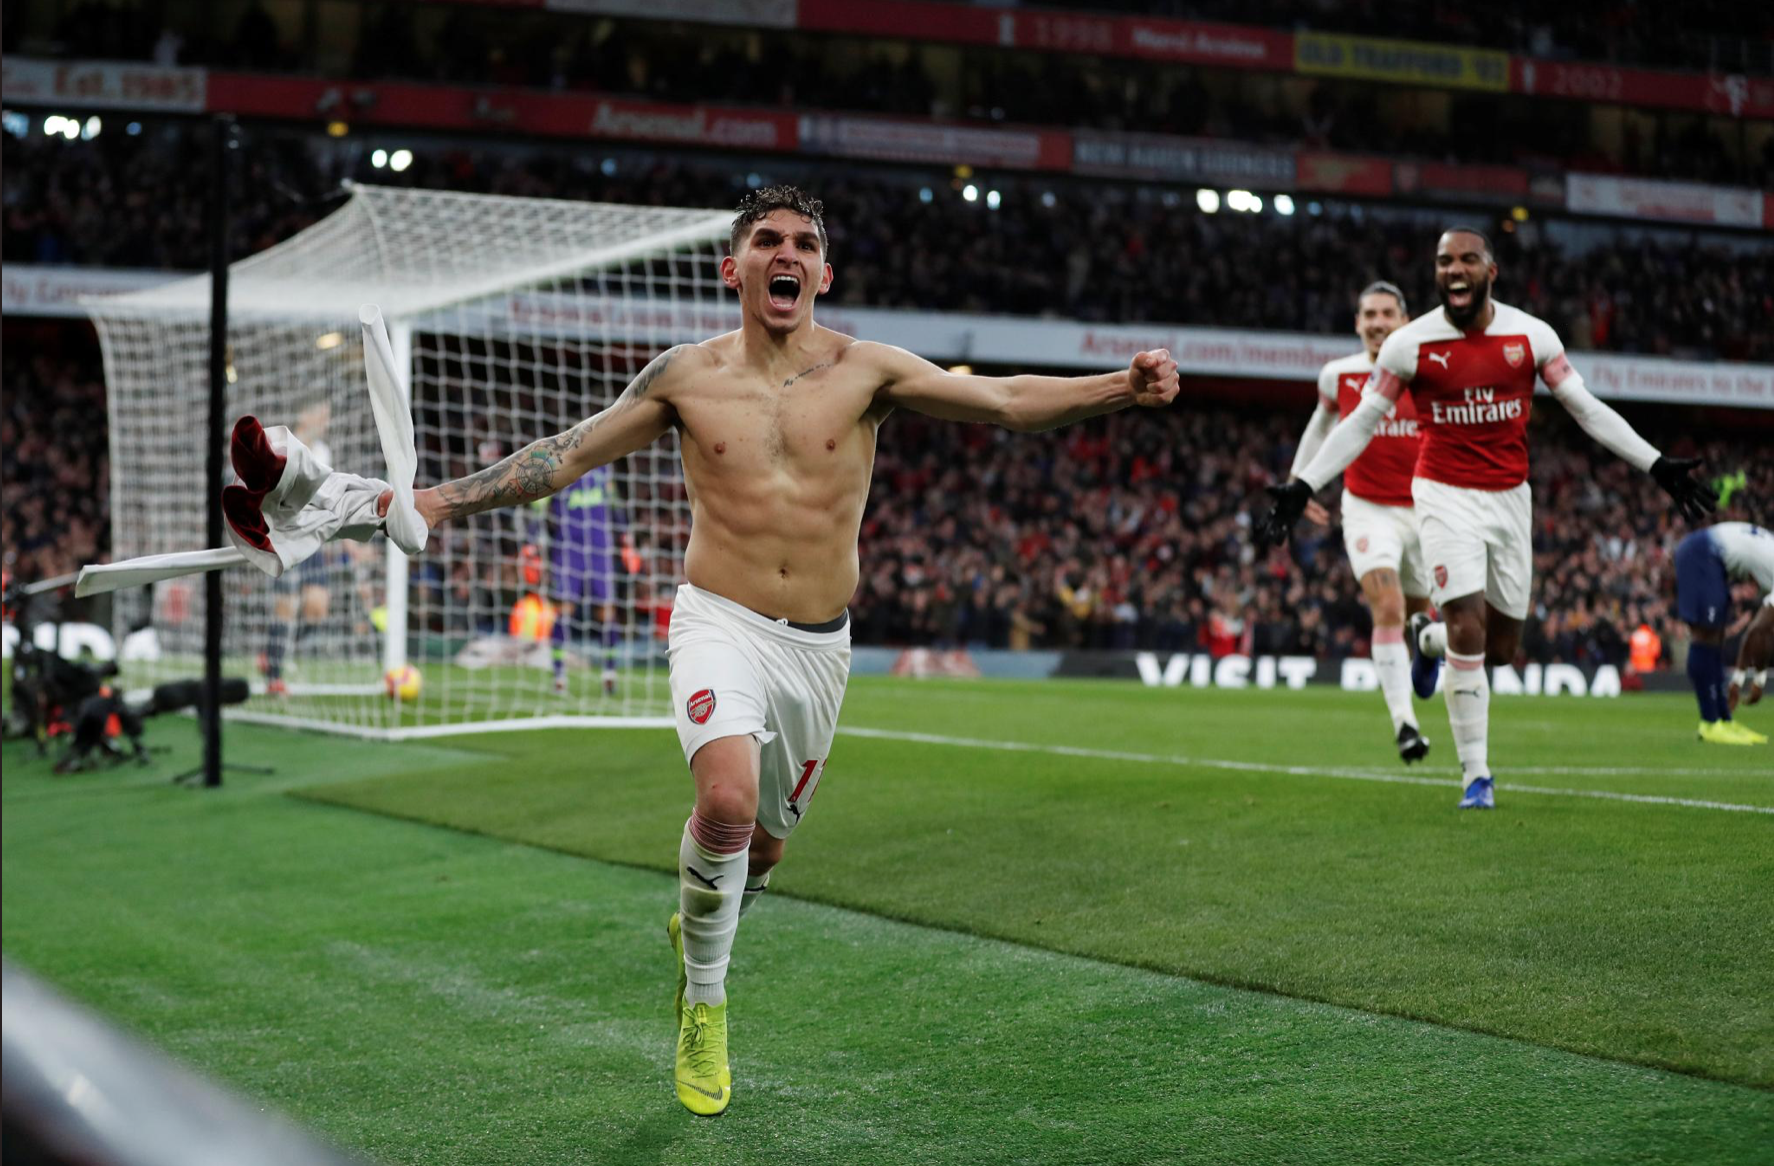 Arsenal remporte remporte un derby d’une intensité folle (4-2)